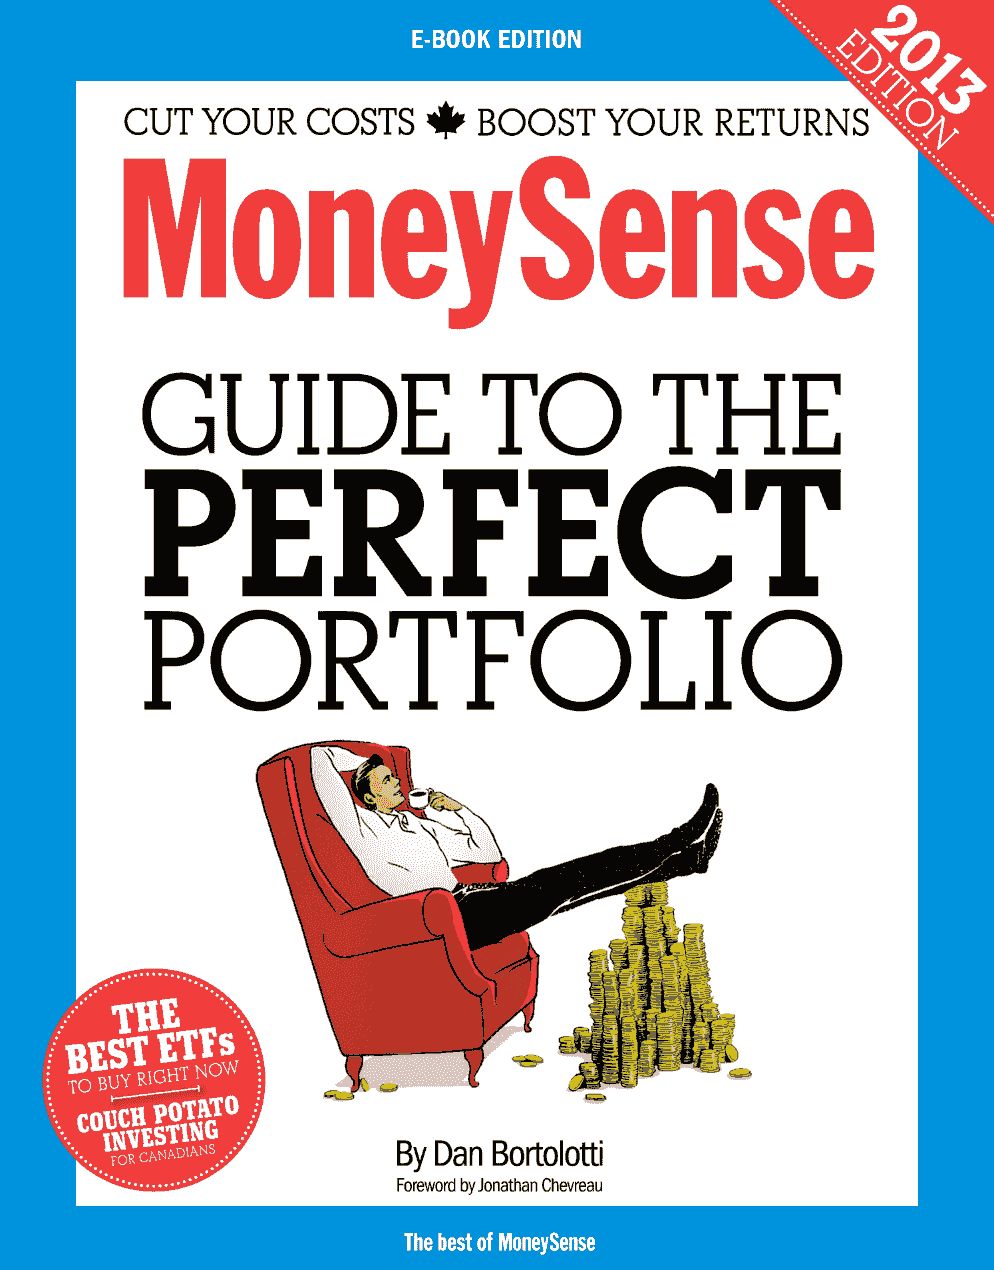 MoneySense Guide to the Perfect Portfolio 2013 by Dan Bortolotti